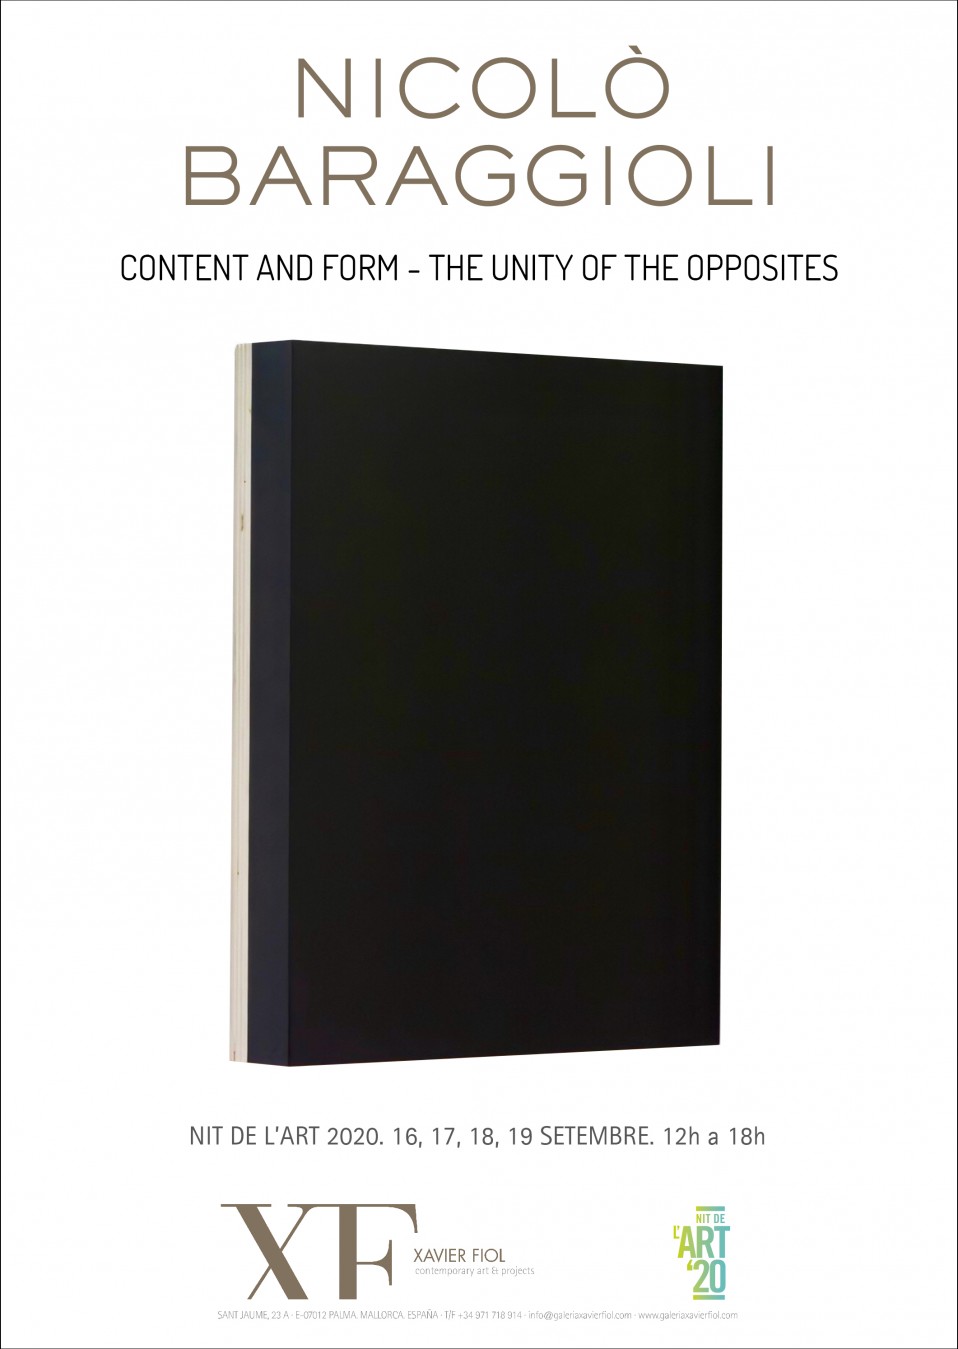 Galería XF próxima exposición: NICOLÒ BARAGGIOLI  «Content and form – The unity of the opposites». 16, 17, 18 y 19 septiembre. Nit de l’Art 2020. 12h a 18h.